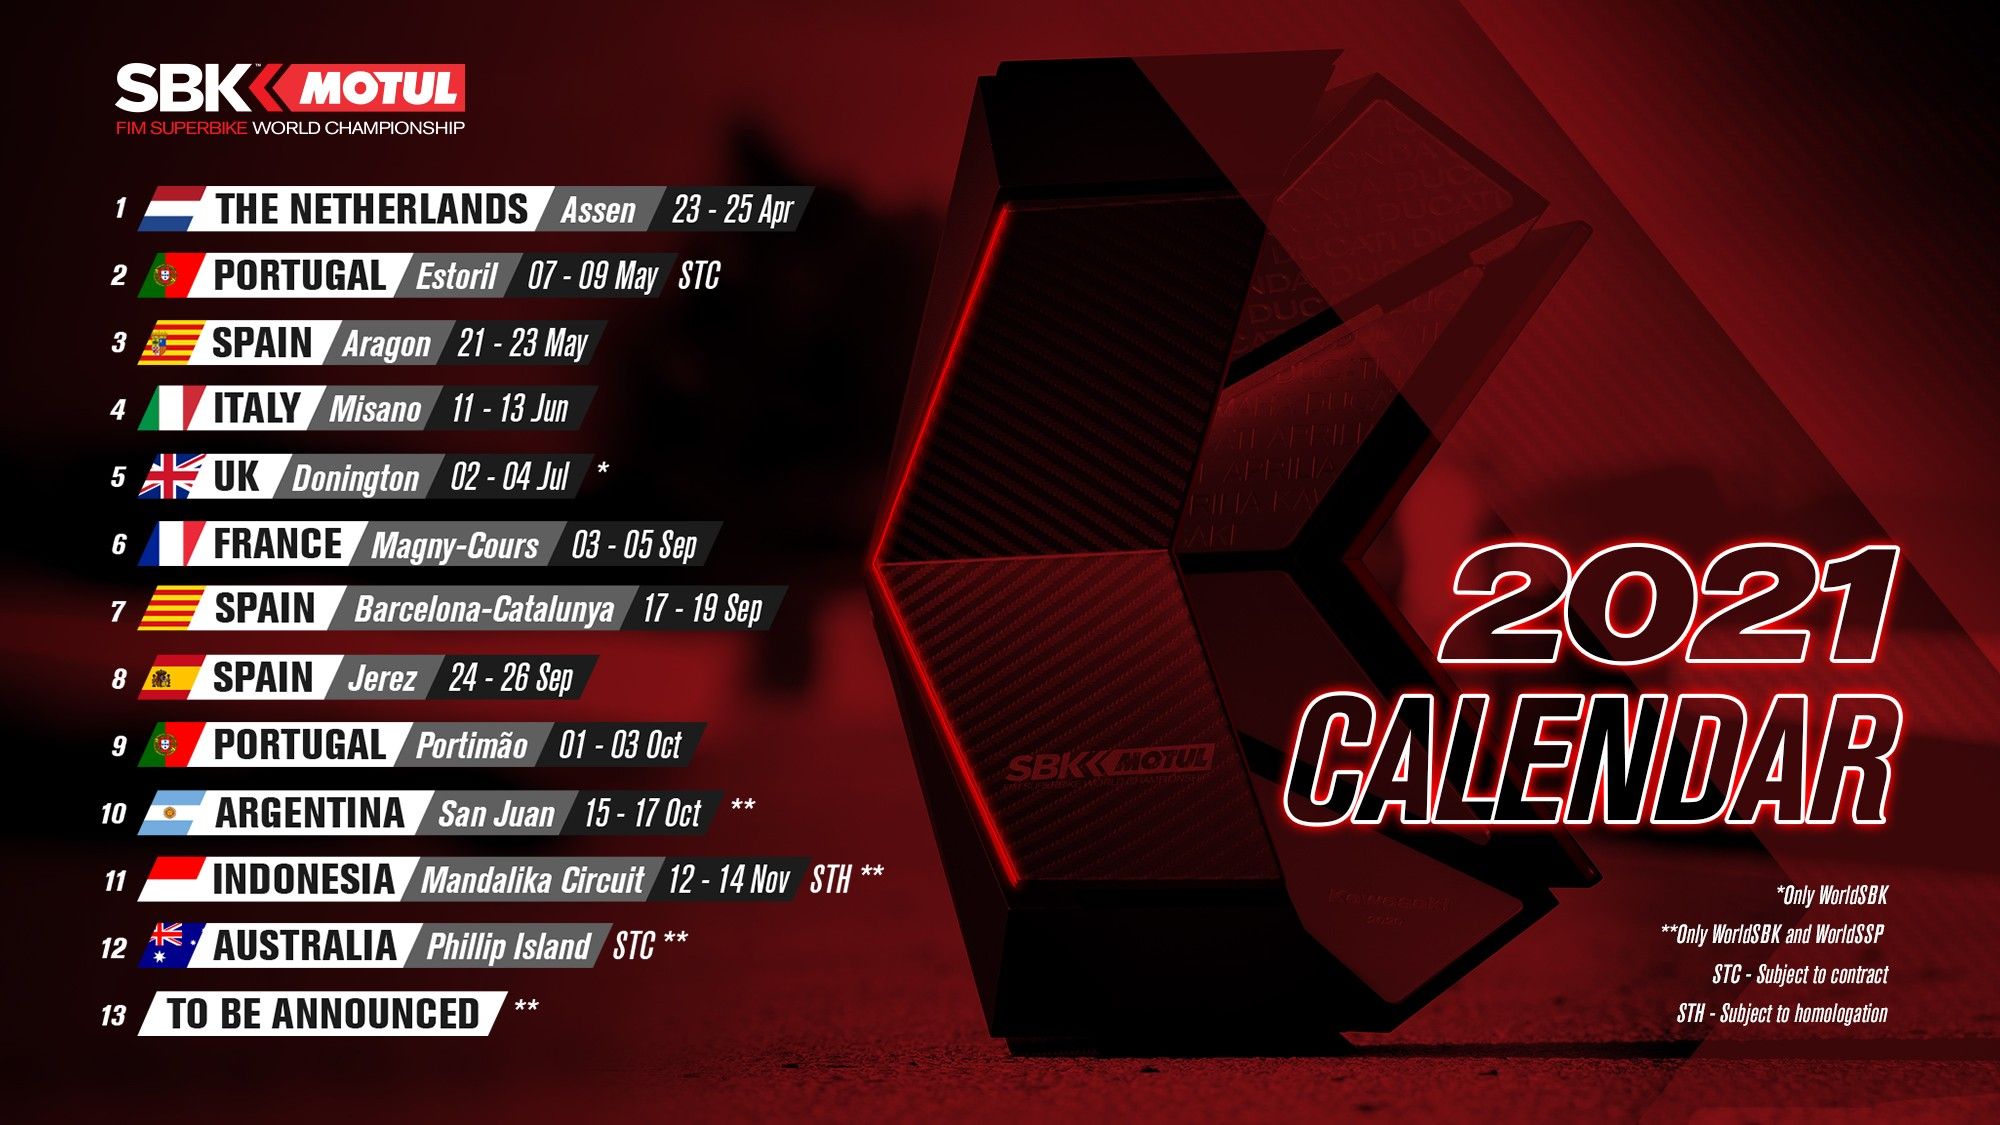 Kalender balap WSBK 2021 terdapat nama Sirkuit Mandalika di seri ke-11